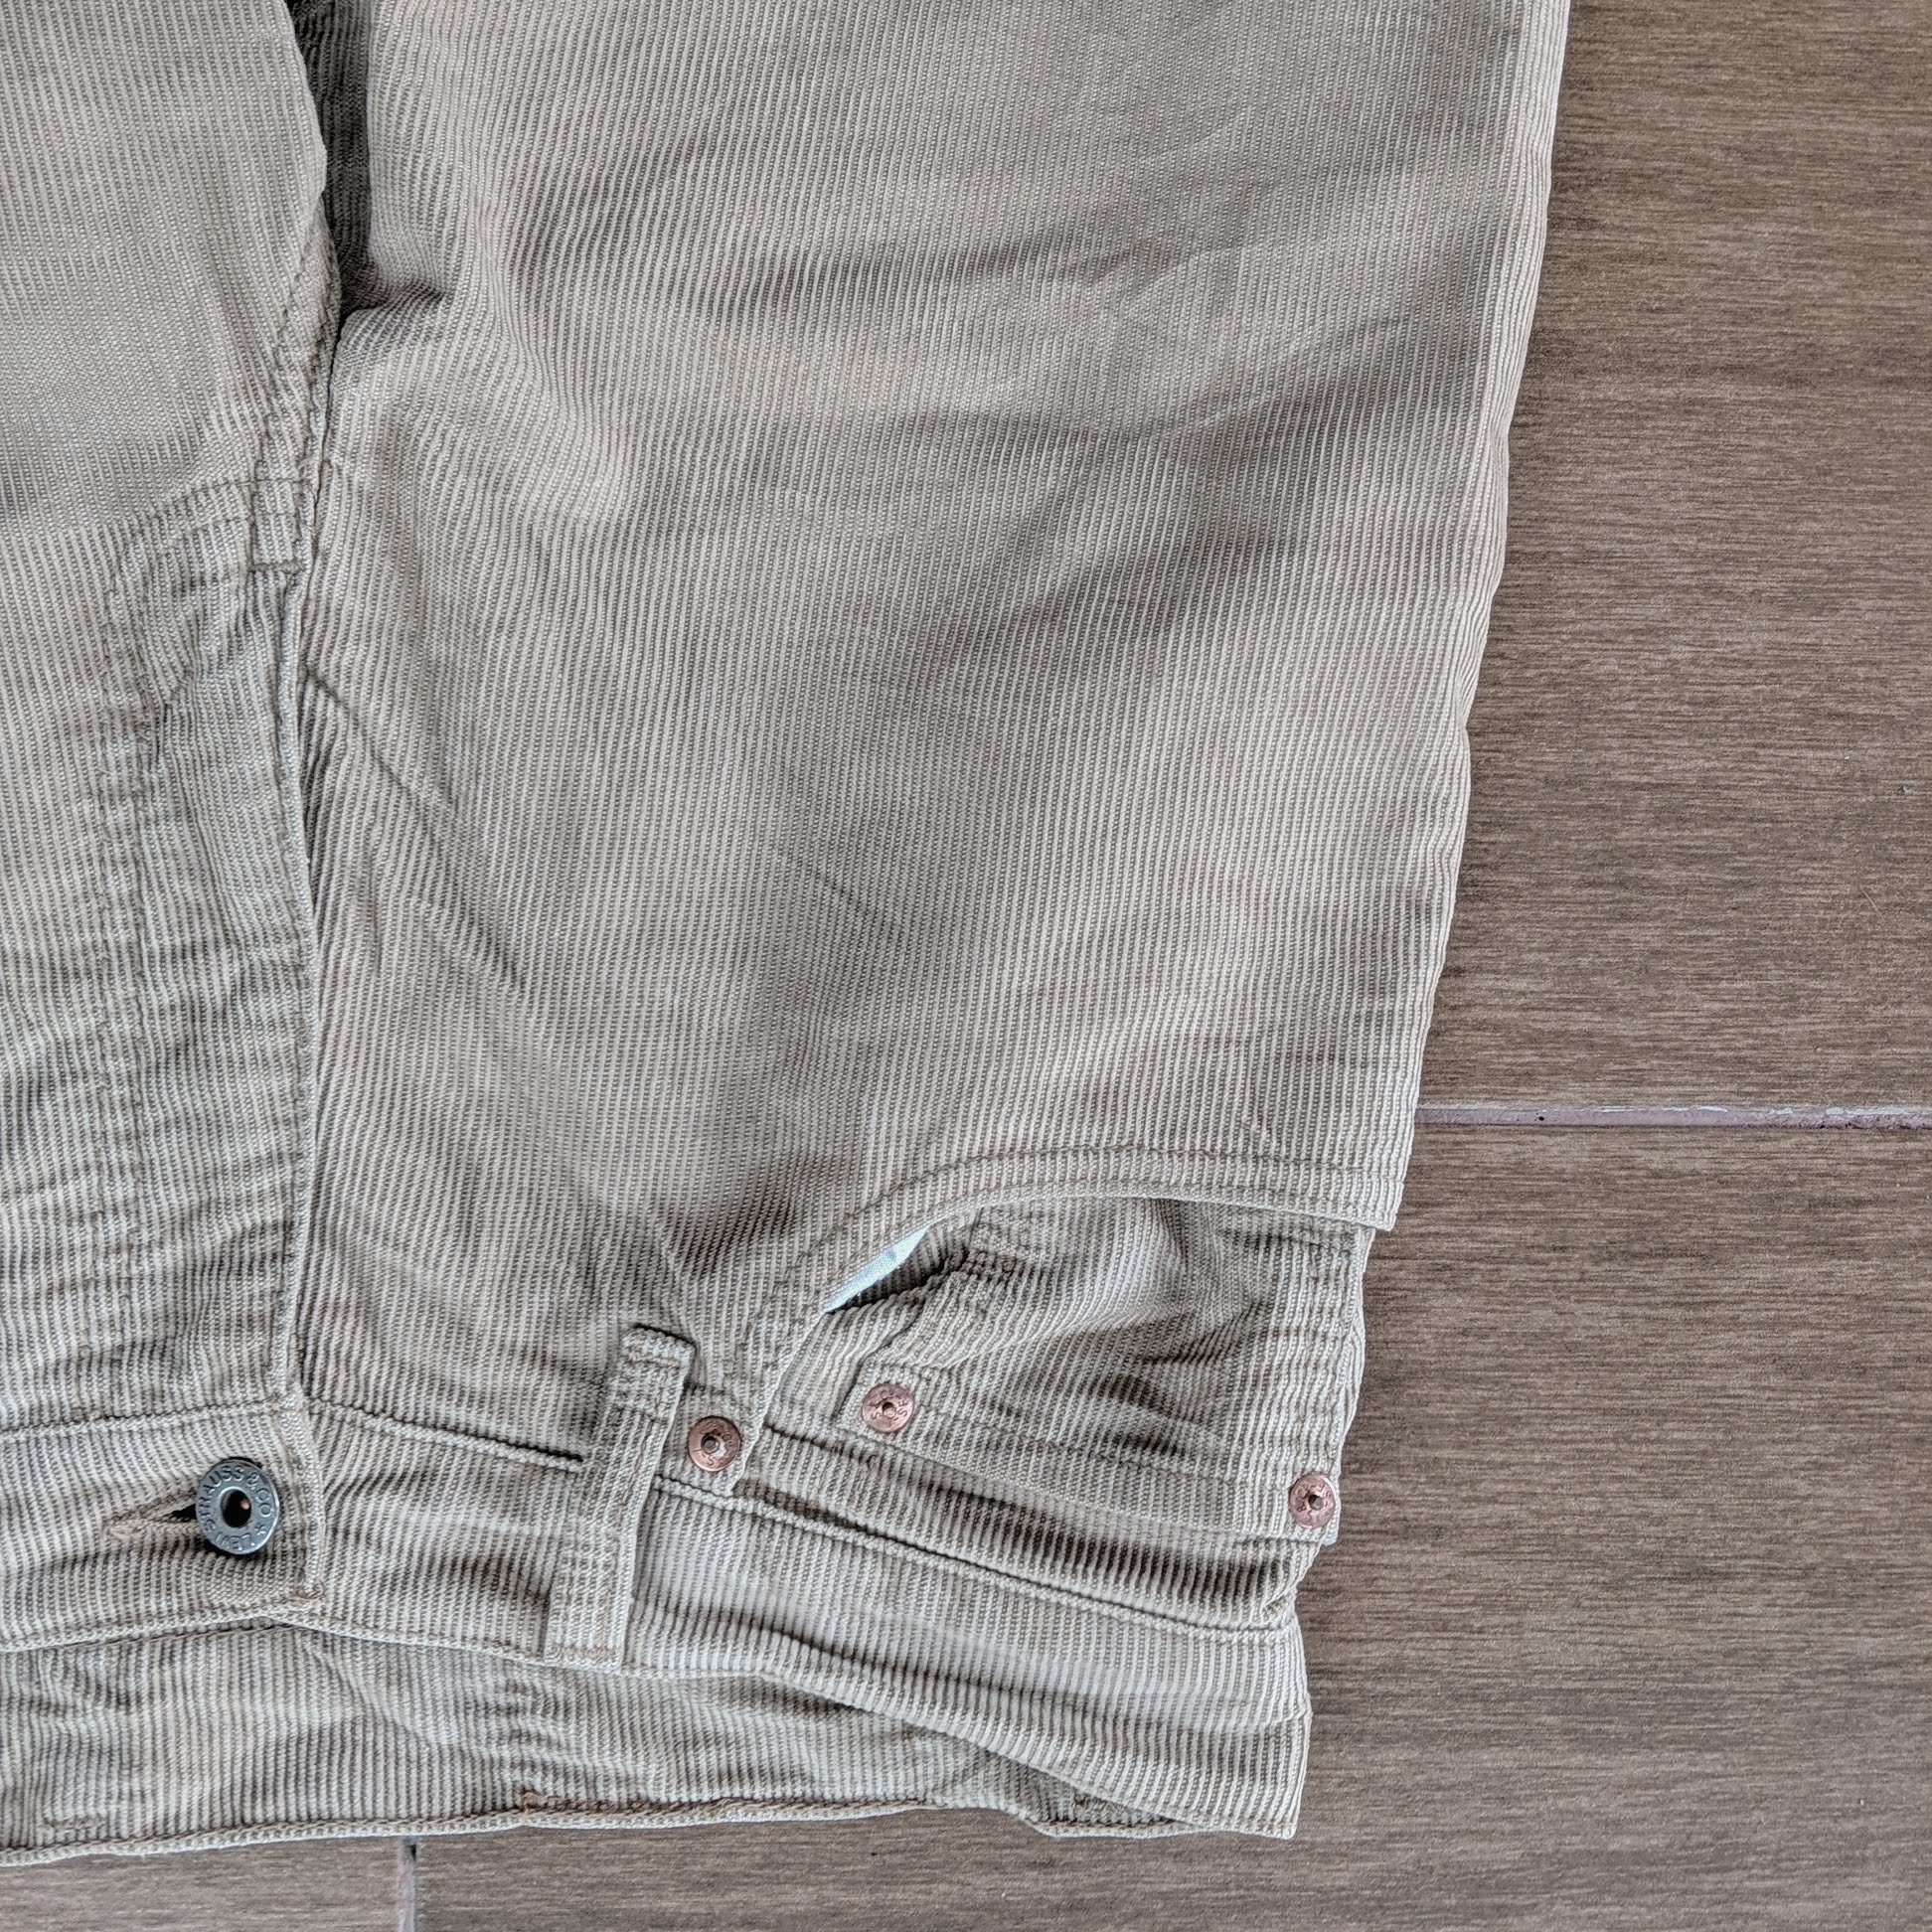 Vintage Levi's 502 Casual Trousers Pants - 3